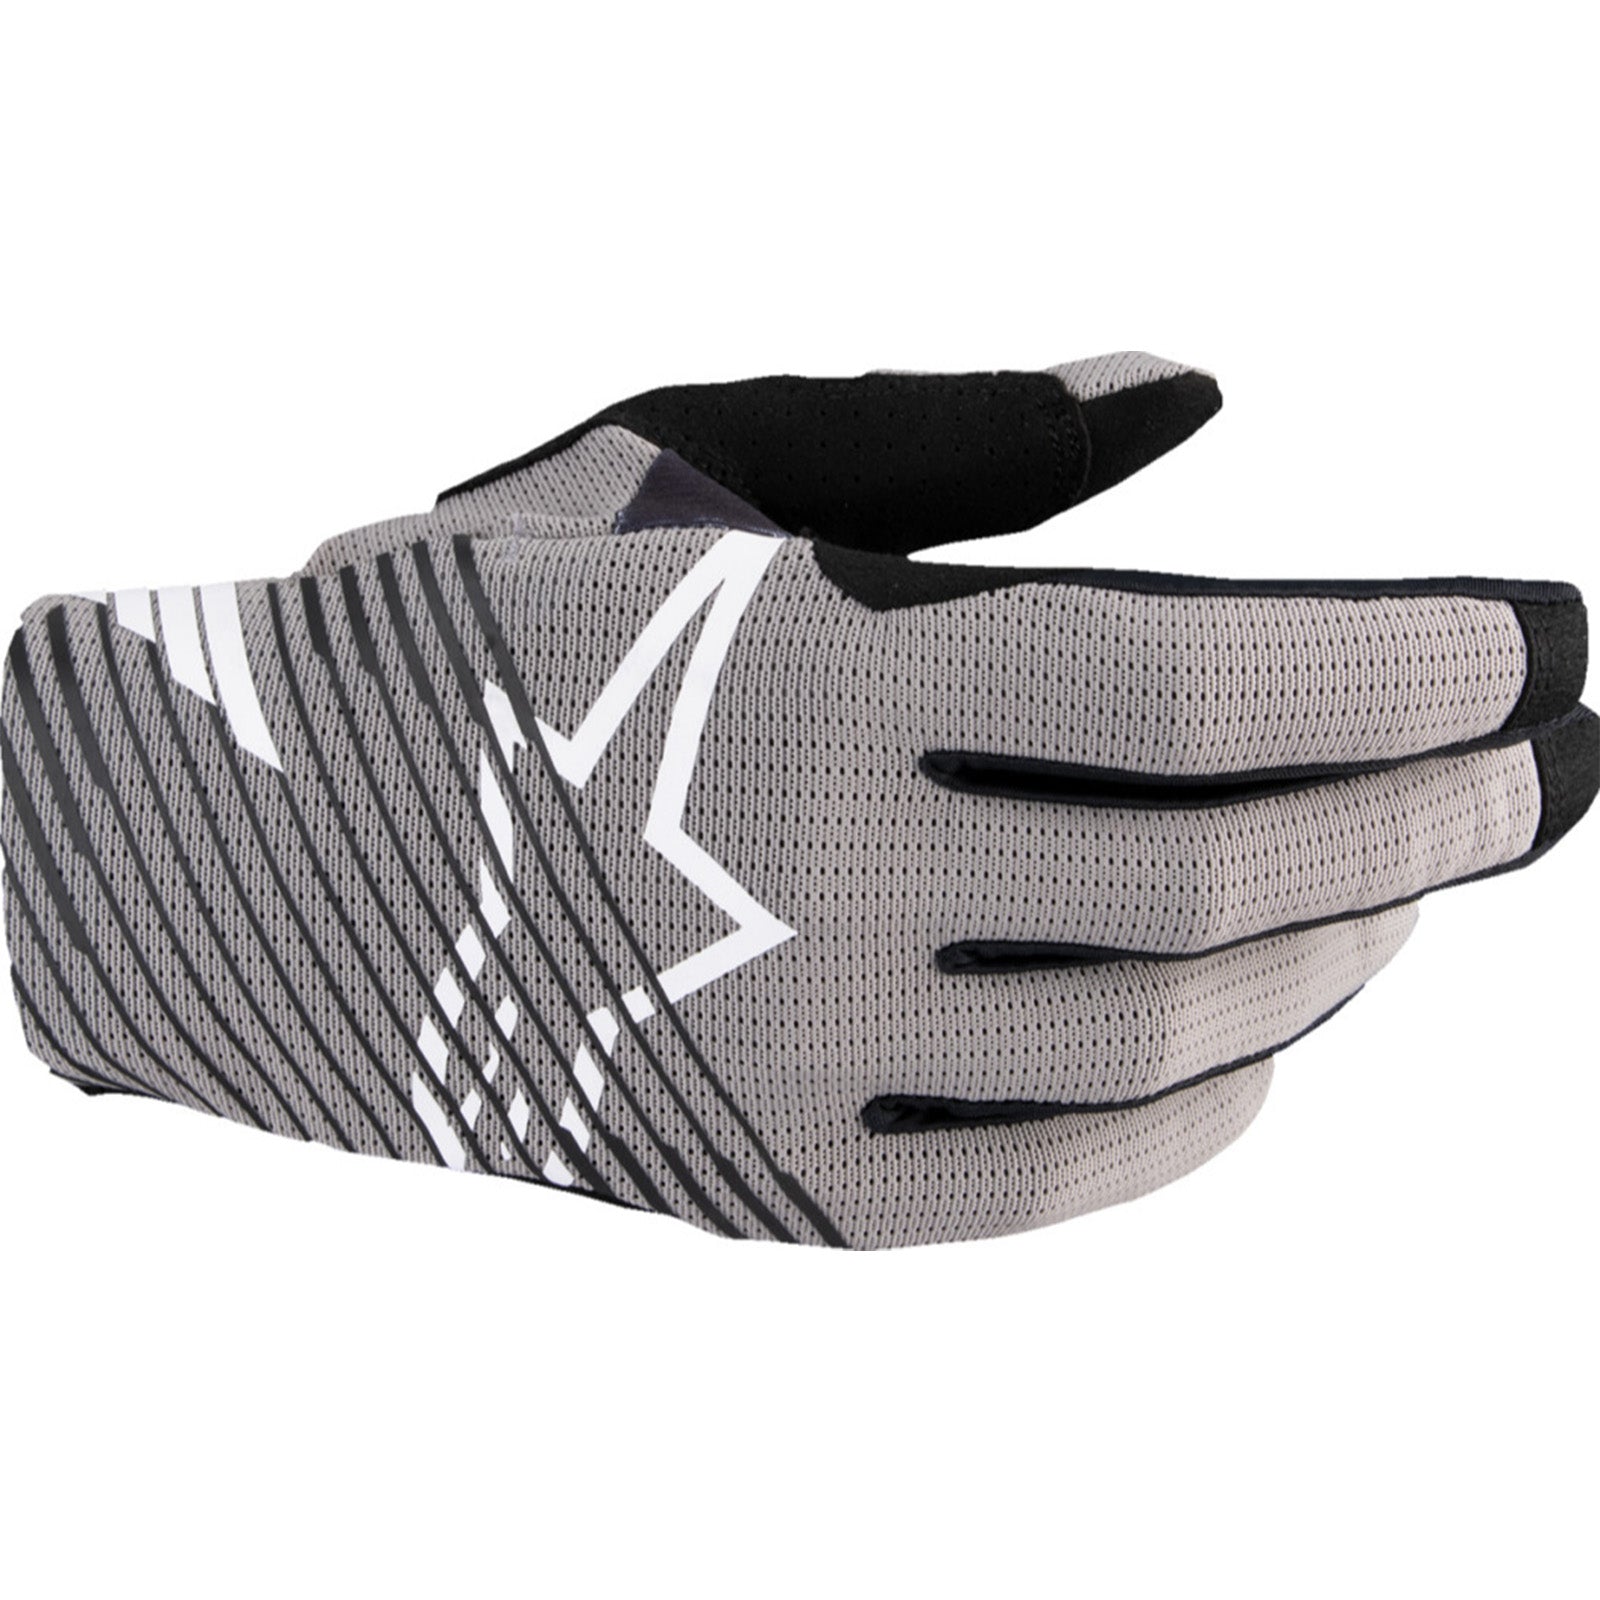 Alpinestars Radar Pro Men's Off-Road Gloves-3330